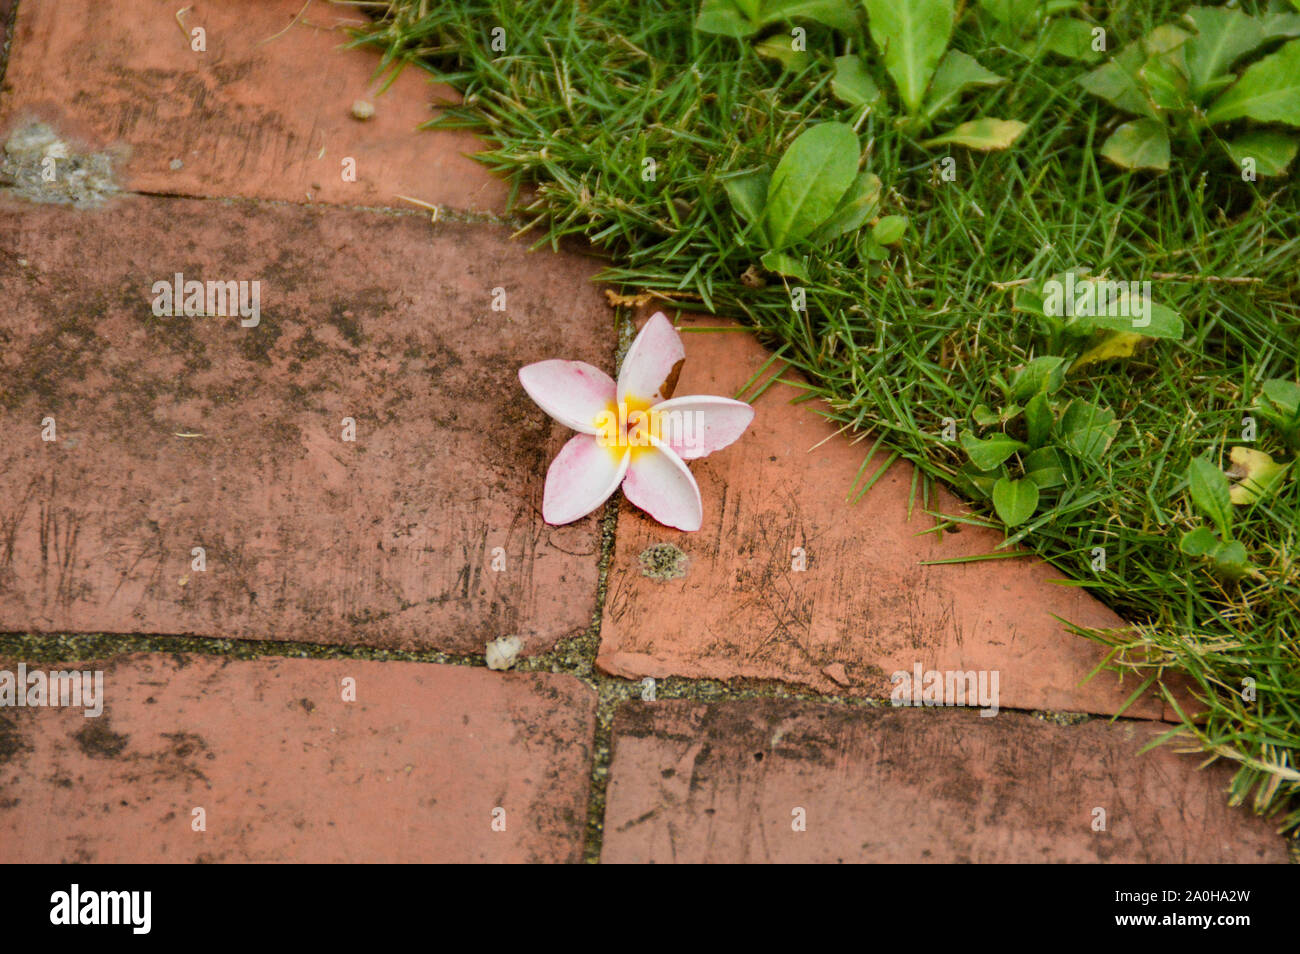 Rosa Frangipani Blume auf dem Straßenbelag, um ein Konzept der Natur und des Wohlbefindens zu zeigen Stockfoto